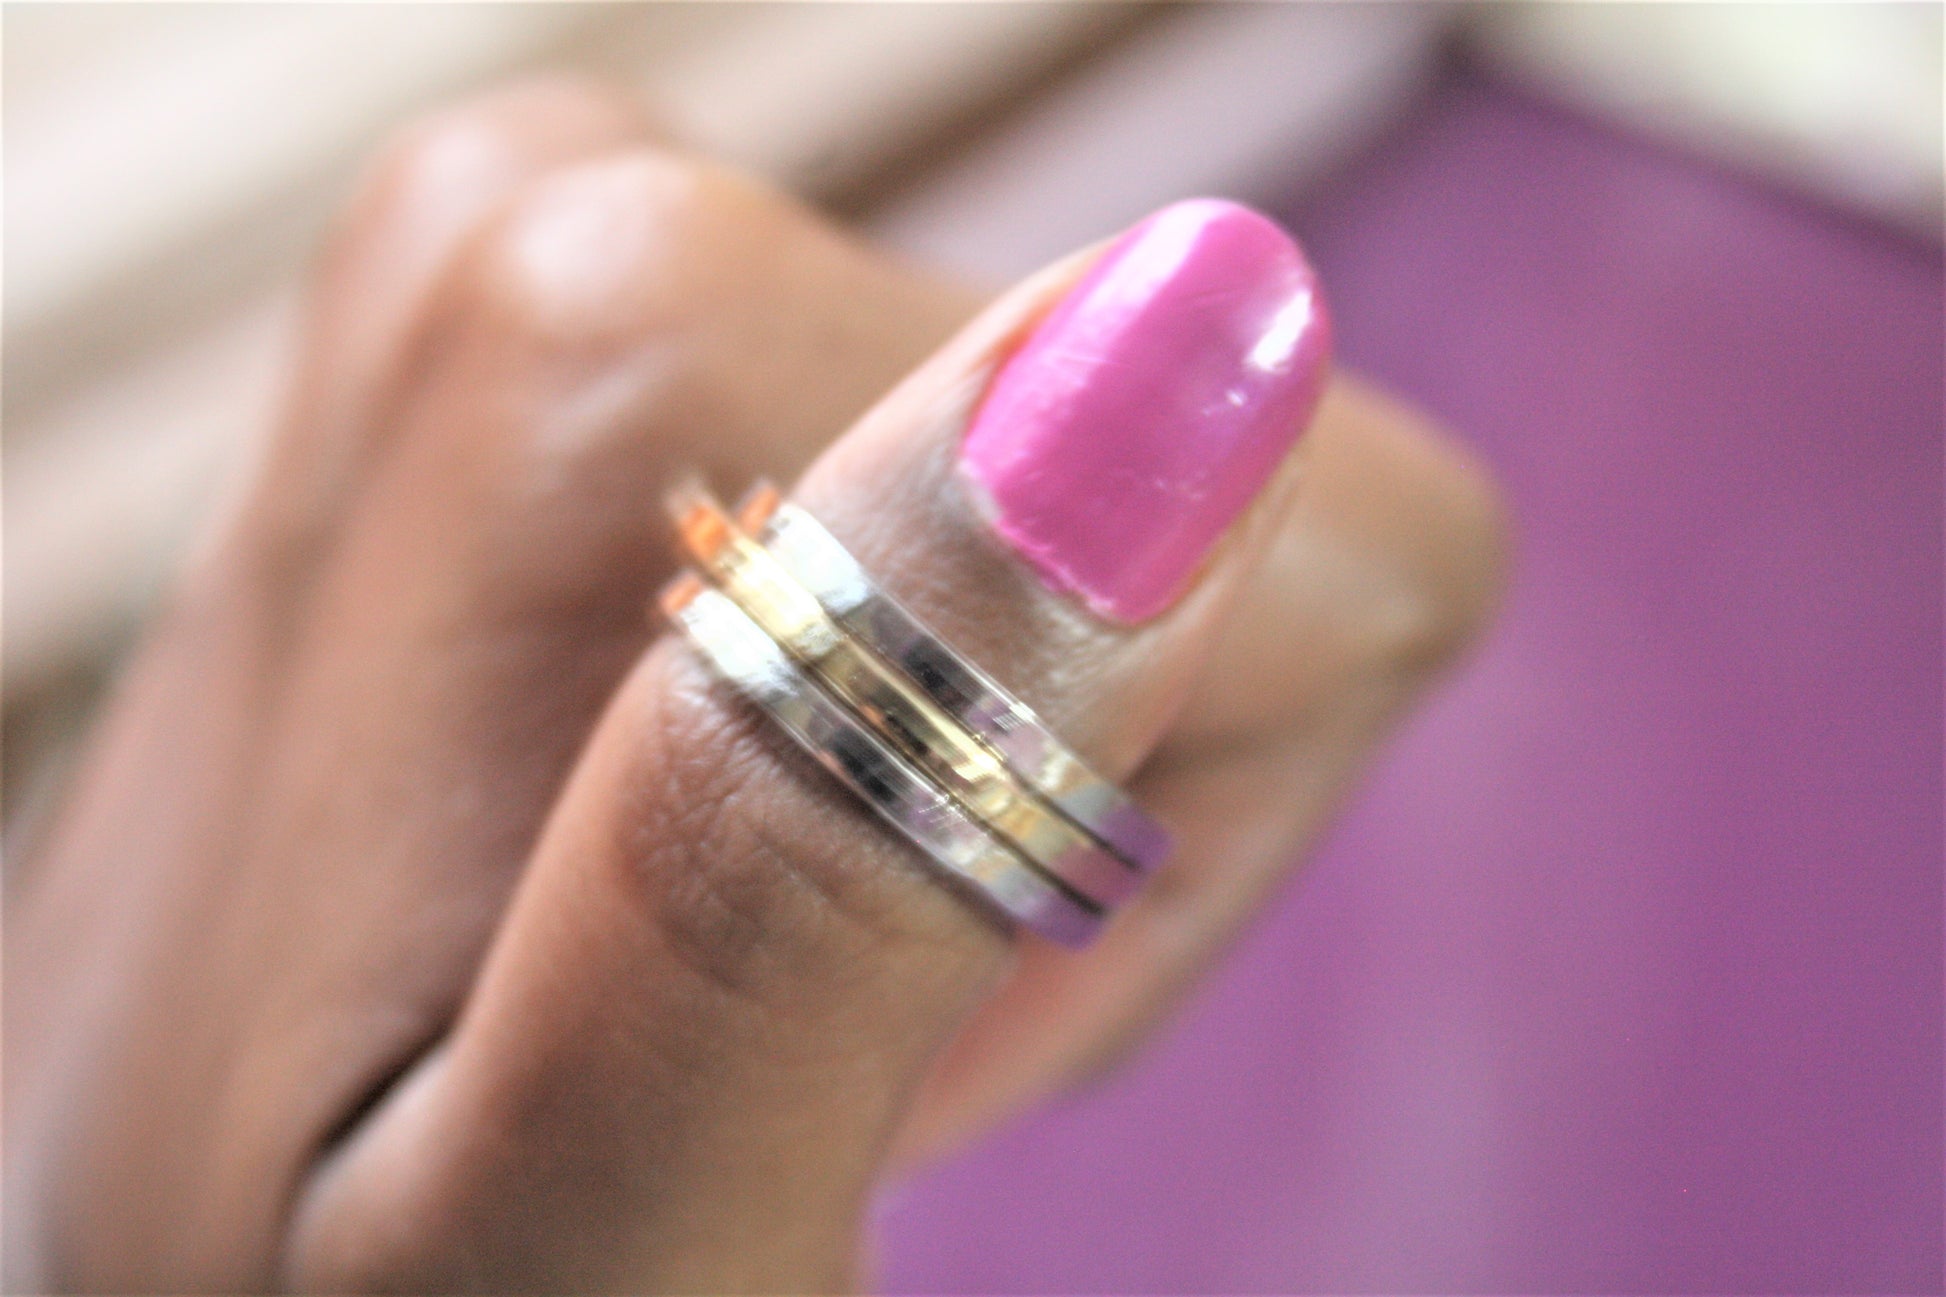 Designer 2 in 1 Gold & Silver Plated Finger Ring - GlitterGleam